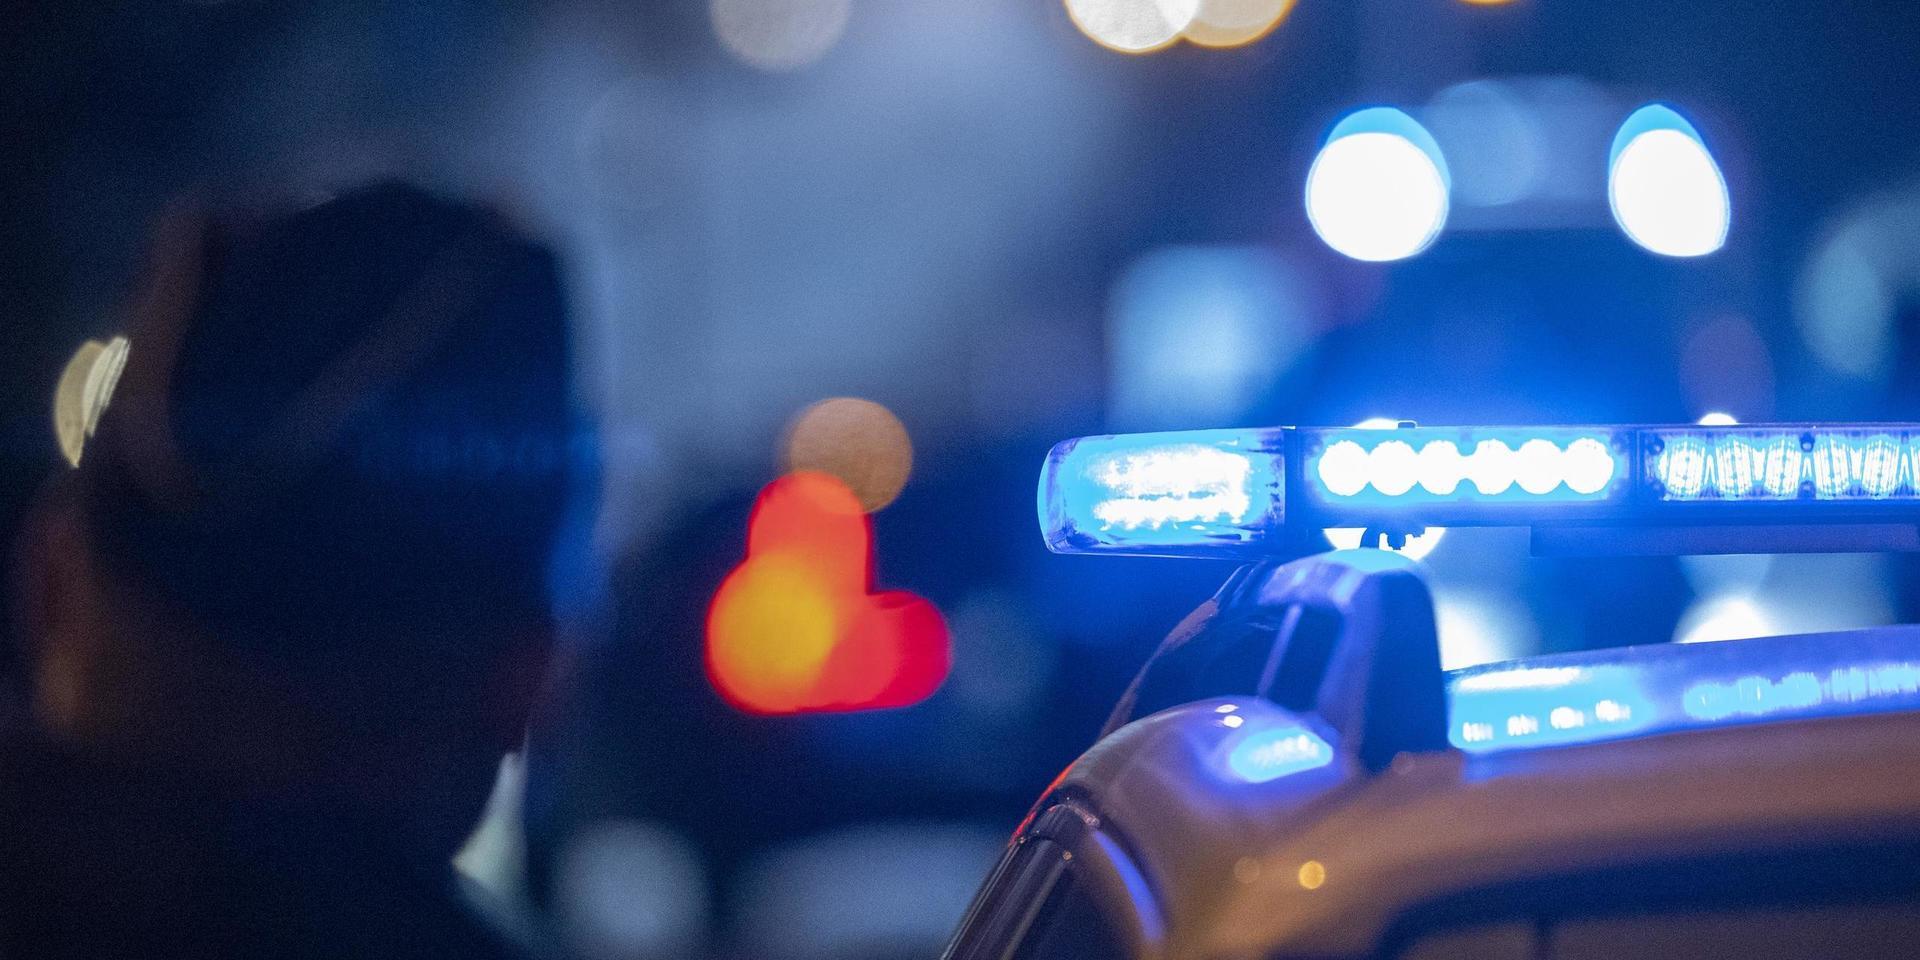 Polisen tog i helgen tre personer i Laholm med omnejd som misstänks ha använt narkotika. Två av dem påträffades misstänkt påverkade ute i trafiken.